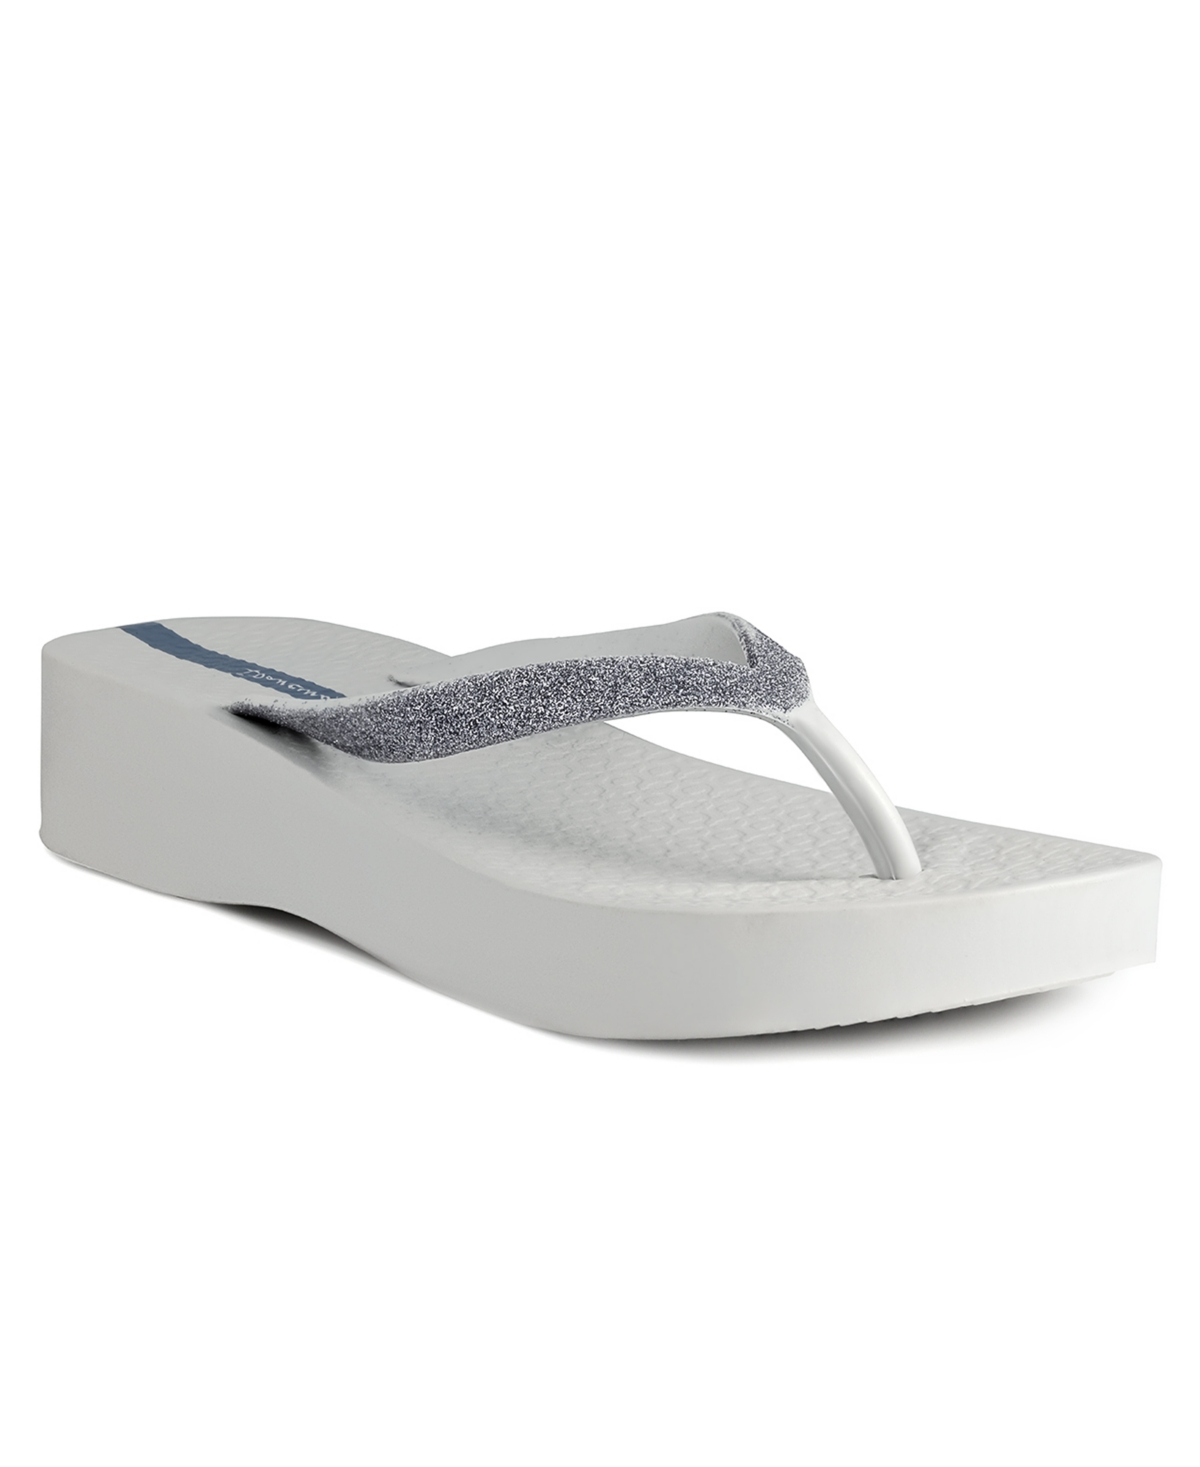 Women's Mesh Chic Comfort Wedge Sandals - Gray, Glitter Gray